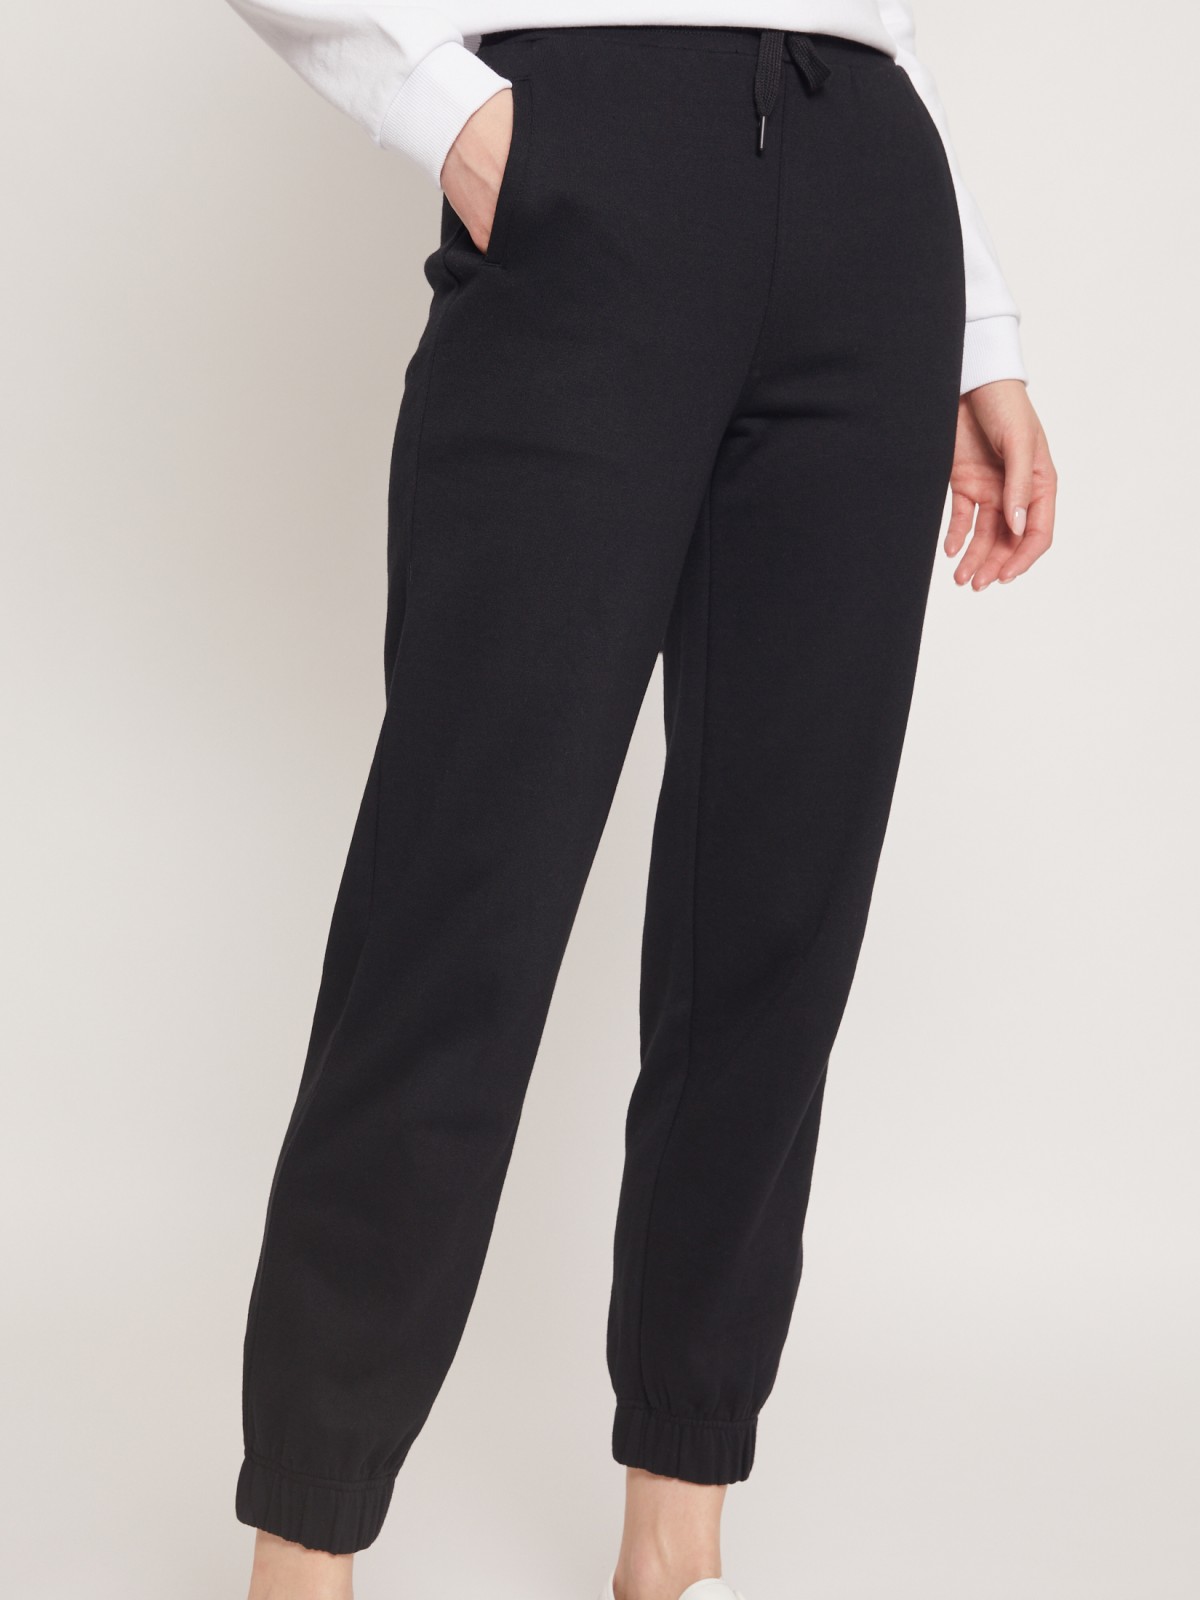 Трикотажные брюки-джоггеры zolla 22131732L121, цвет черный, размер XS - фото 3